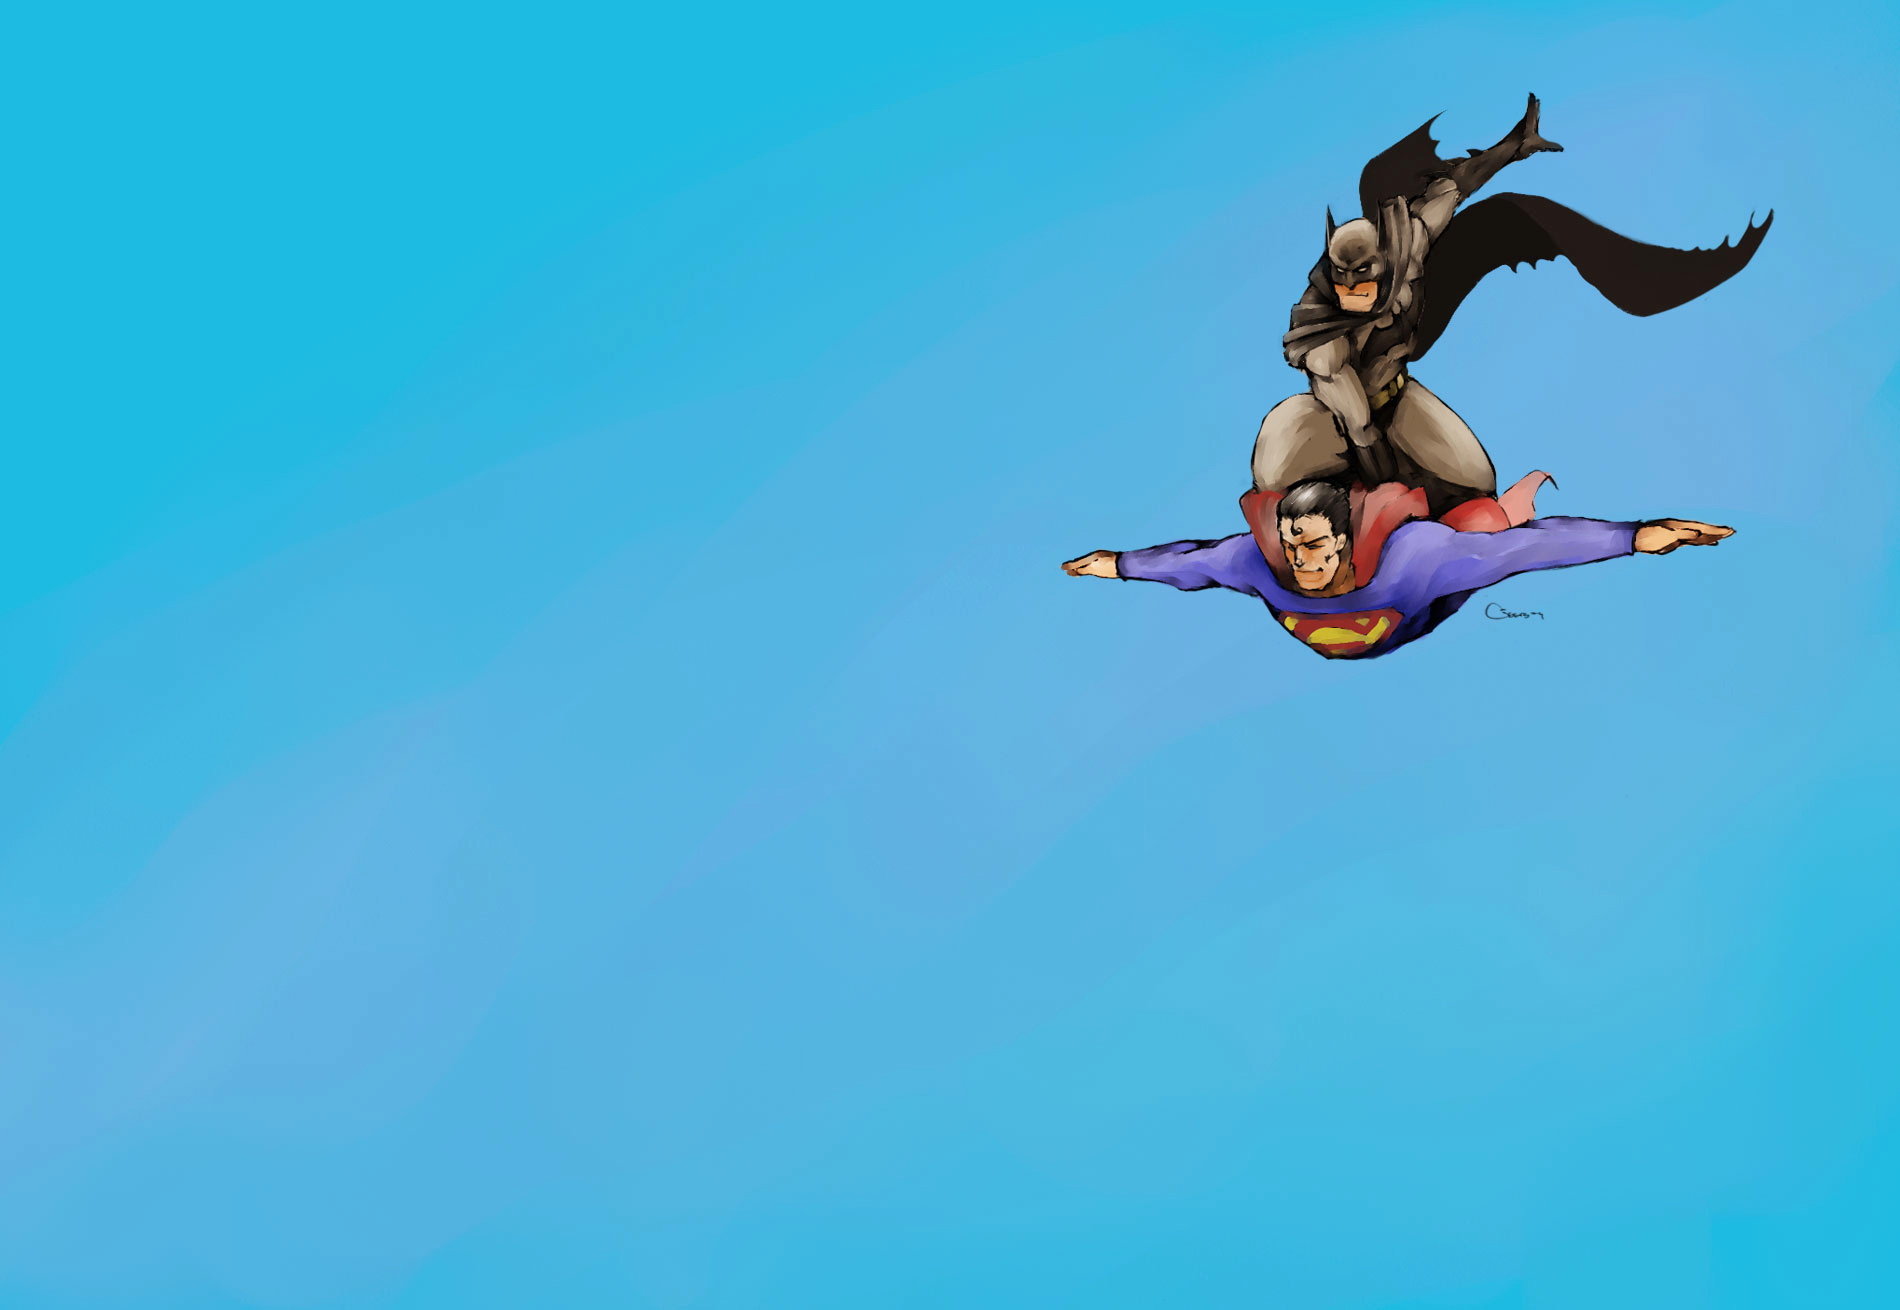 Batman Flying Cartoon